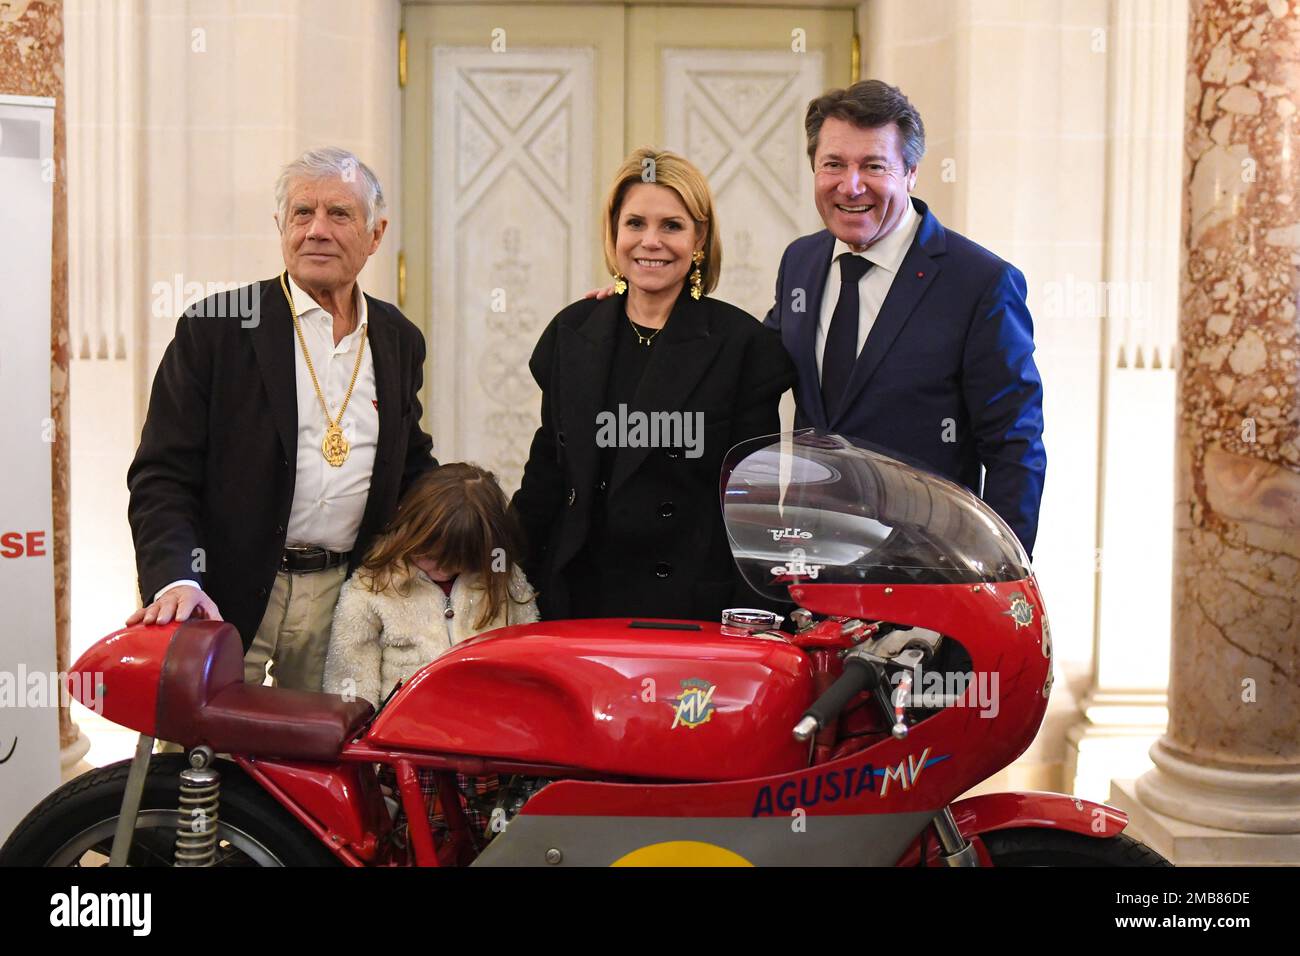 Giacomo Agostini, pilote de moto italien, Maire de Nice Christian Estrosi  avec sa femme Laura Tenoudji et sa fille Bianca lors de la cérémonie des  voeux à la communauté italienne de Nice